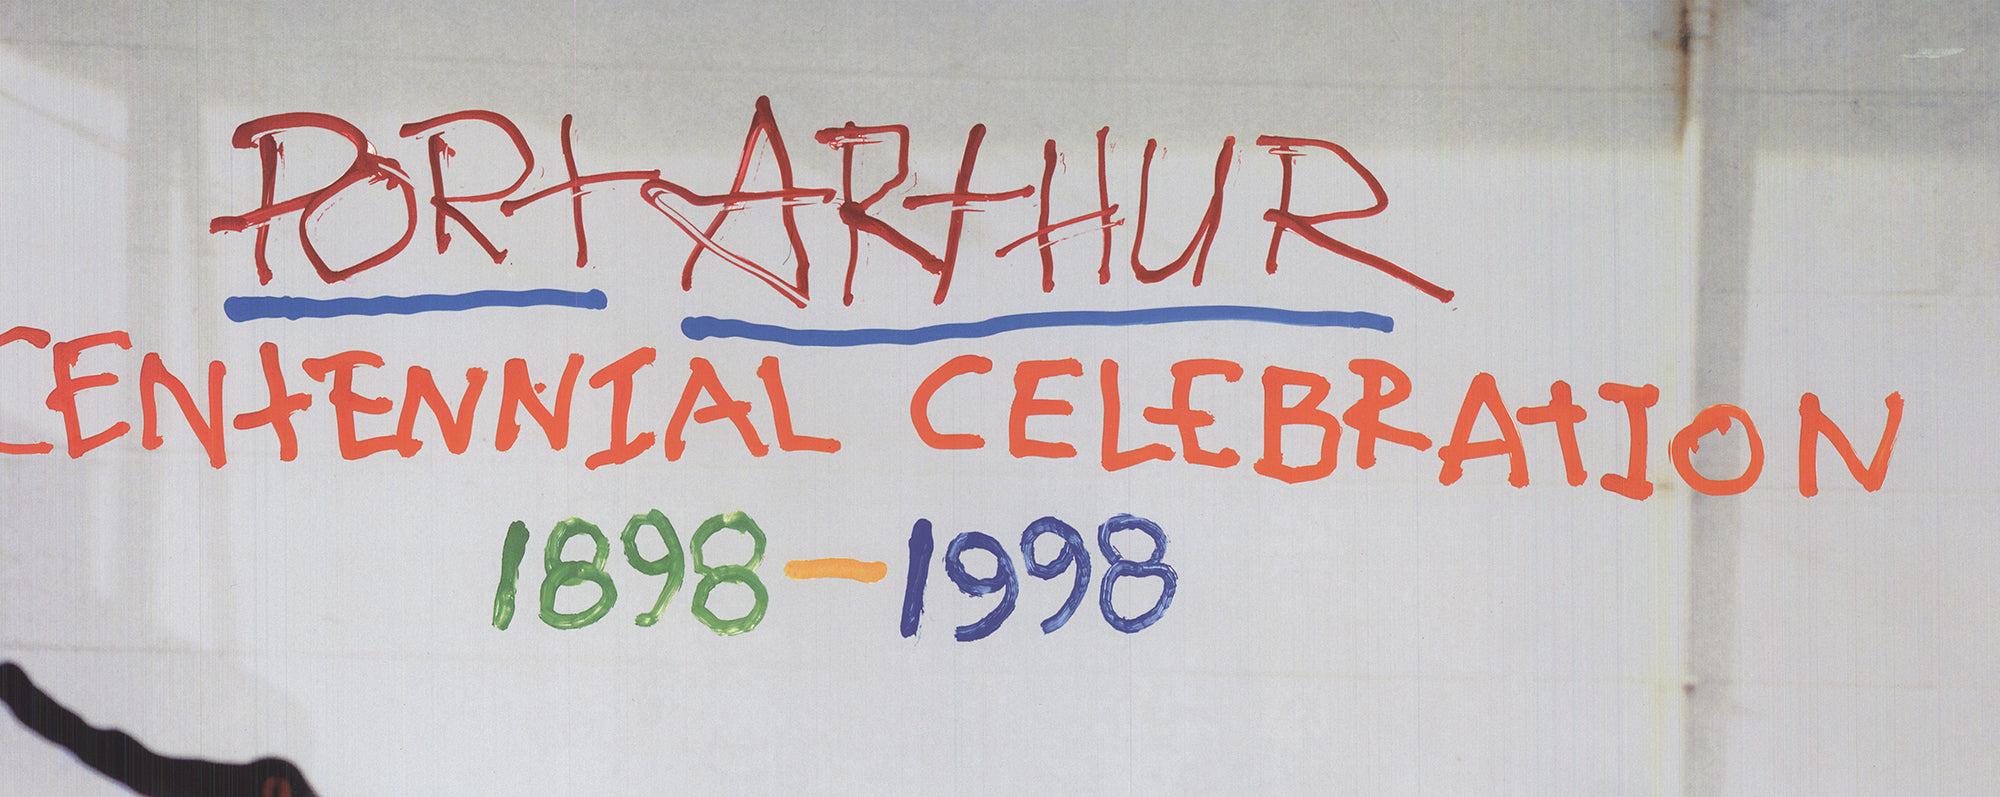 1998 Robert Rauschenberg 'Centennial Celebration' ORIGINAL POSTER For Sale 2